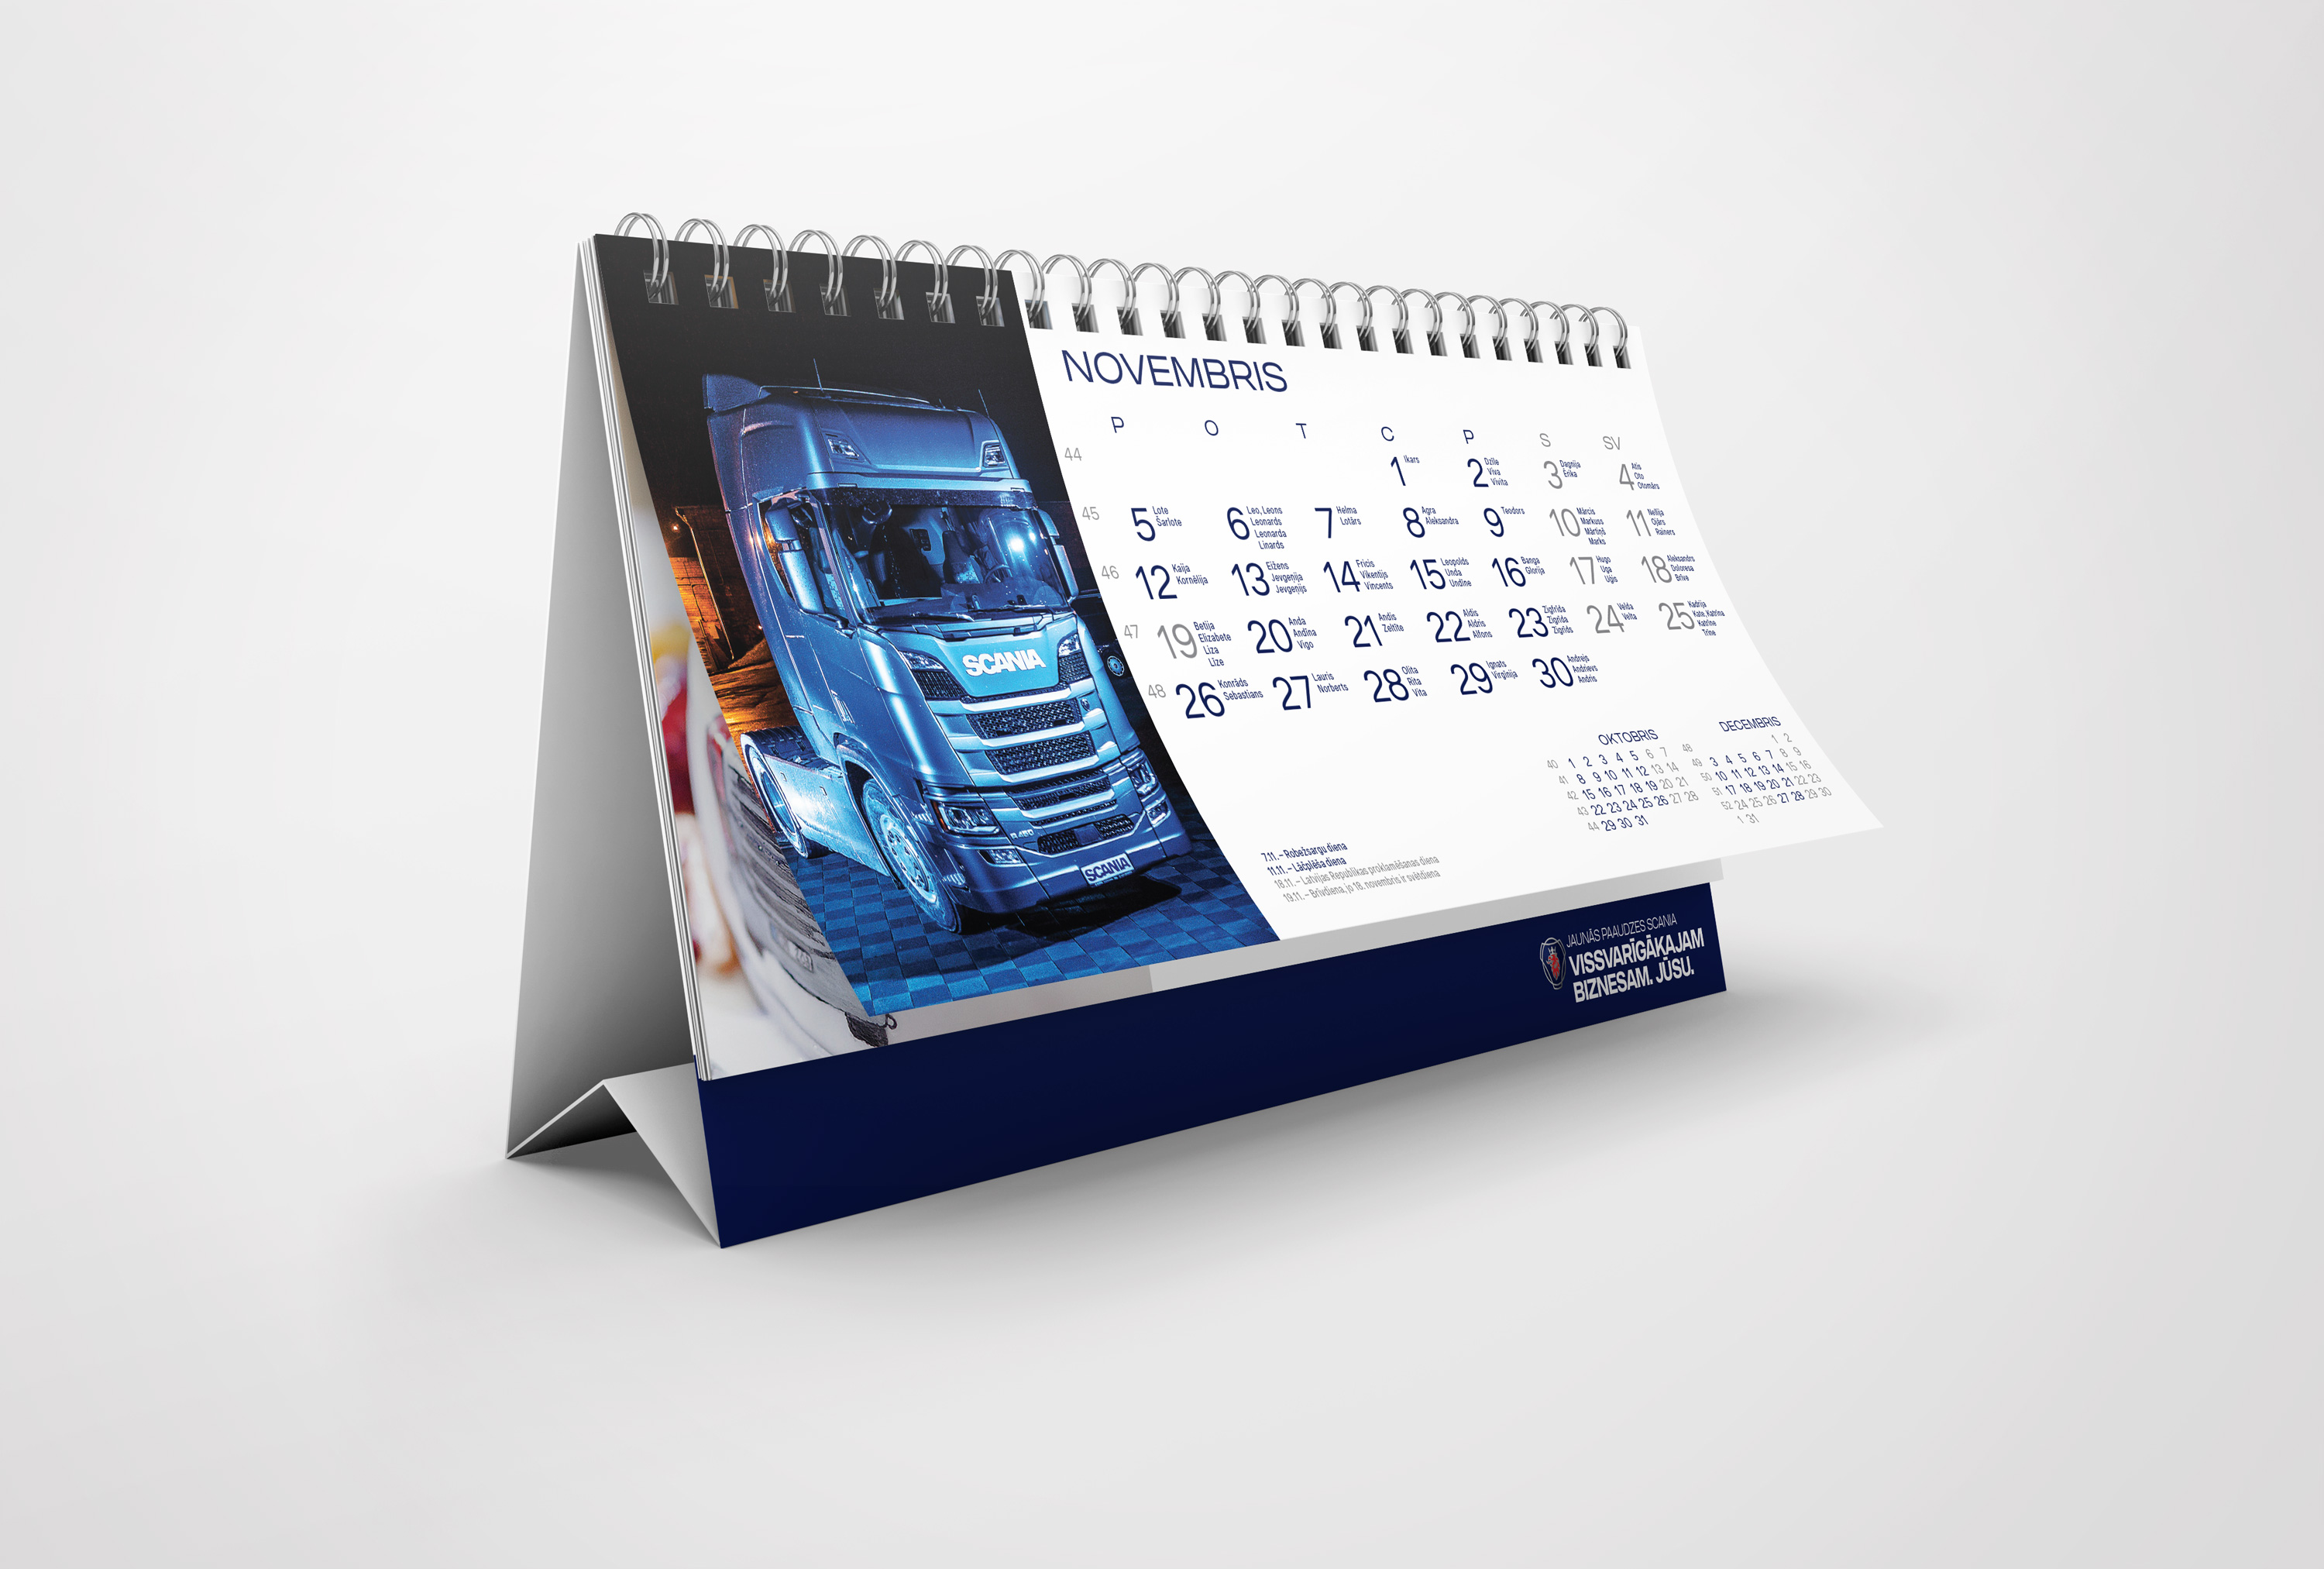 Galda kalendāri druka paveiktais Paveiktais Scania 2018 preview 2